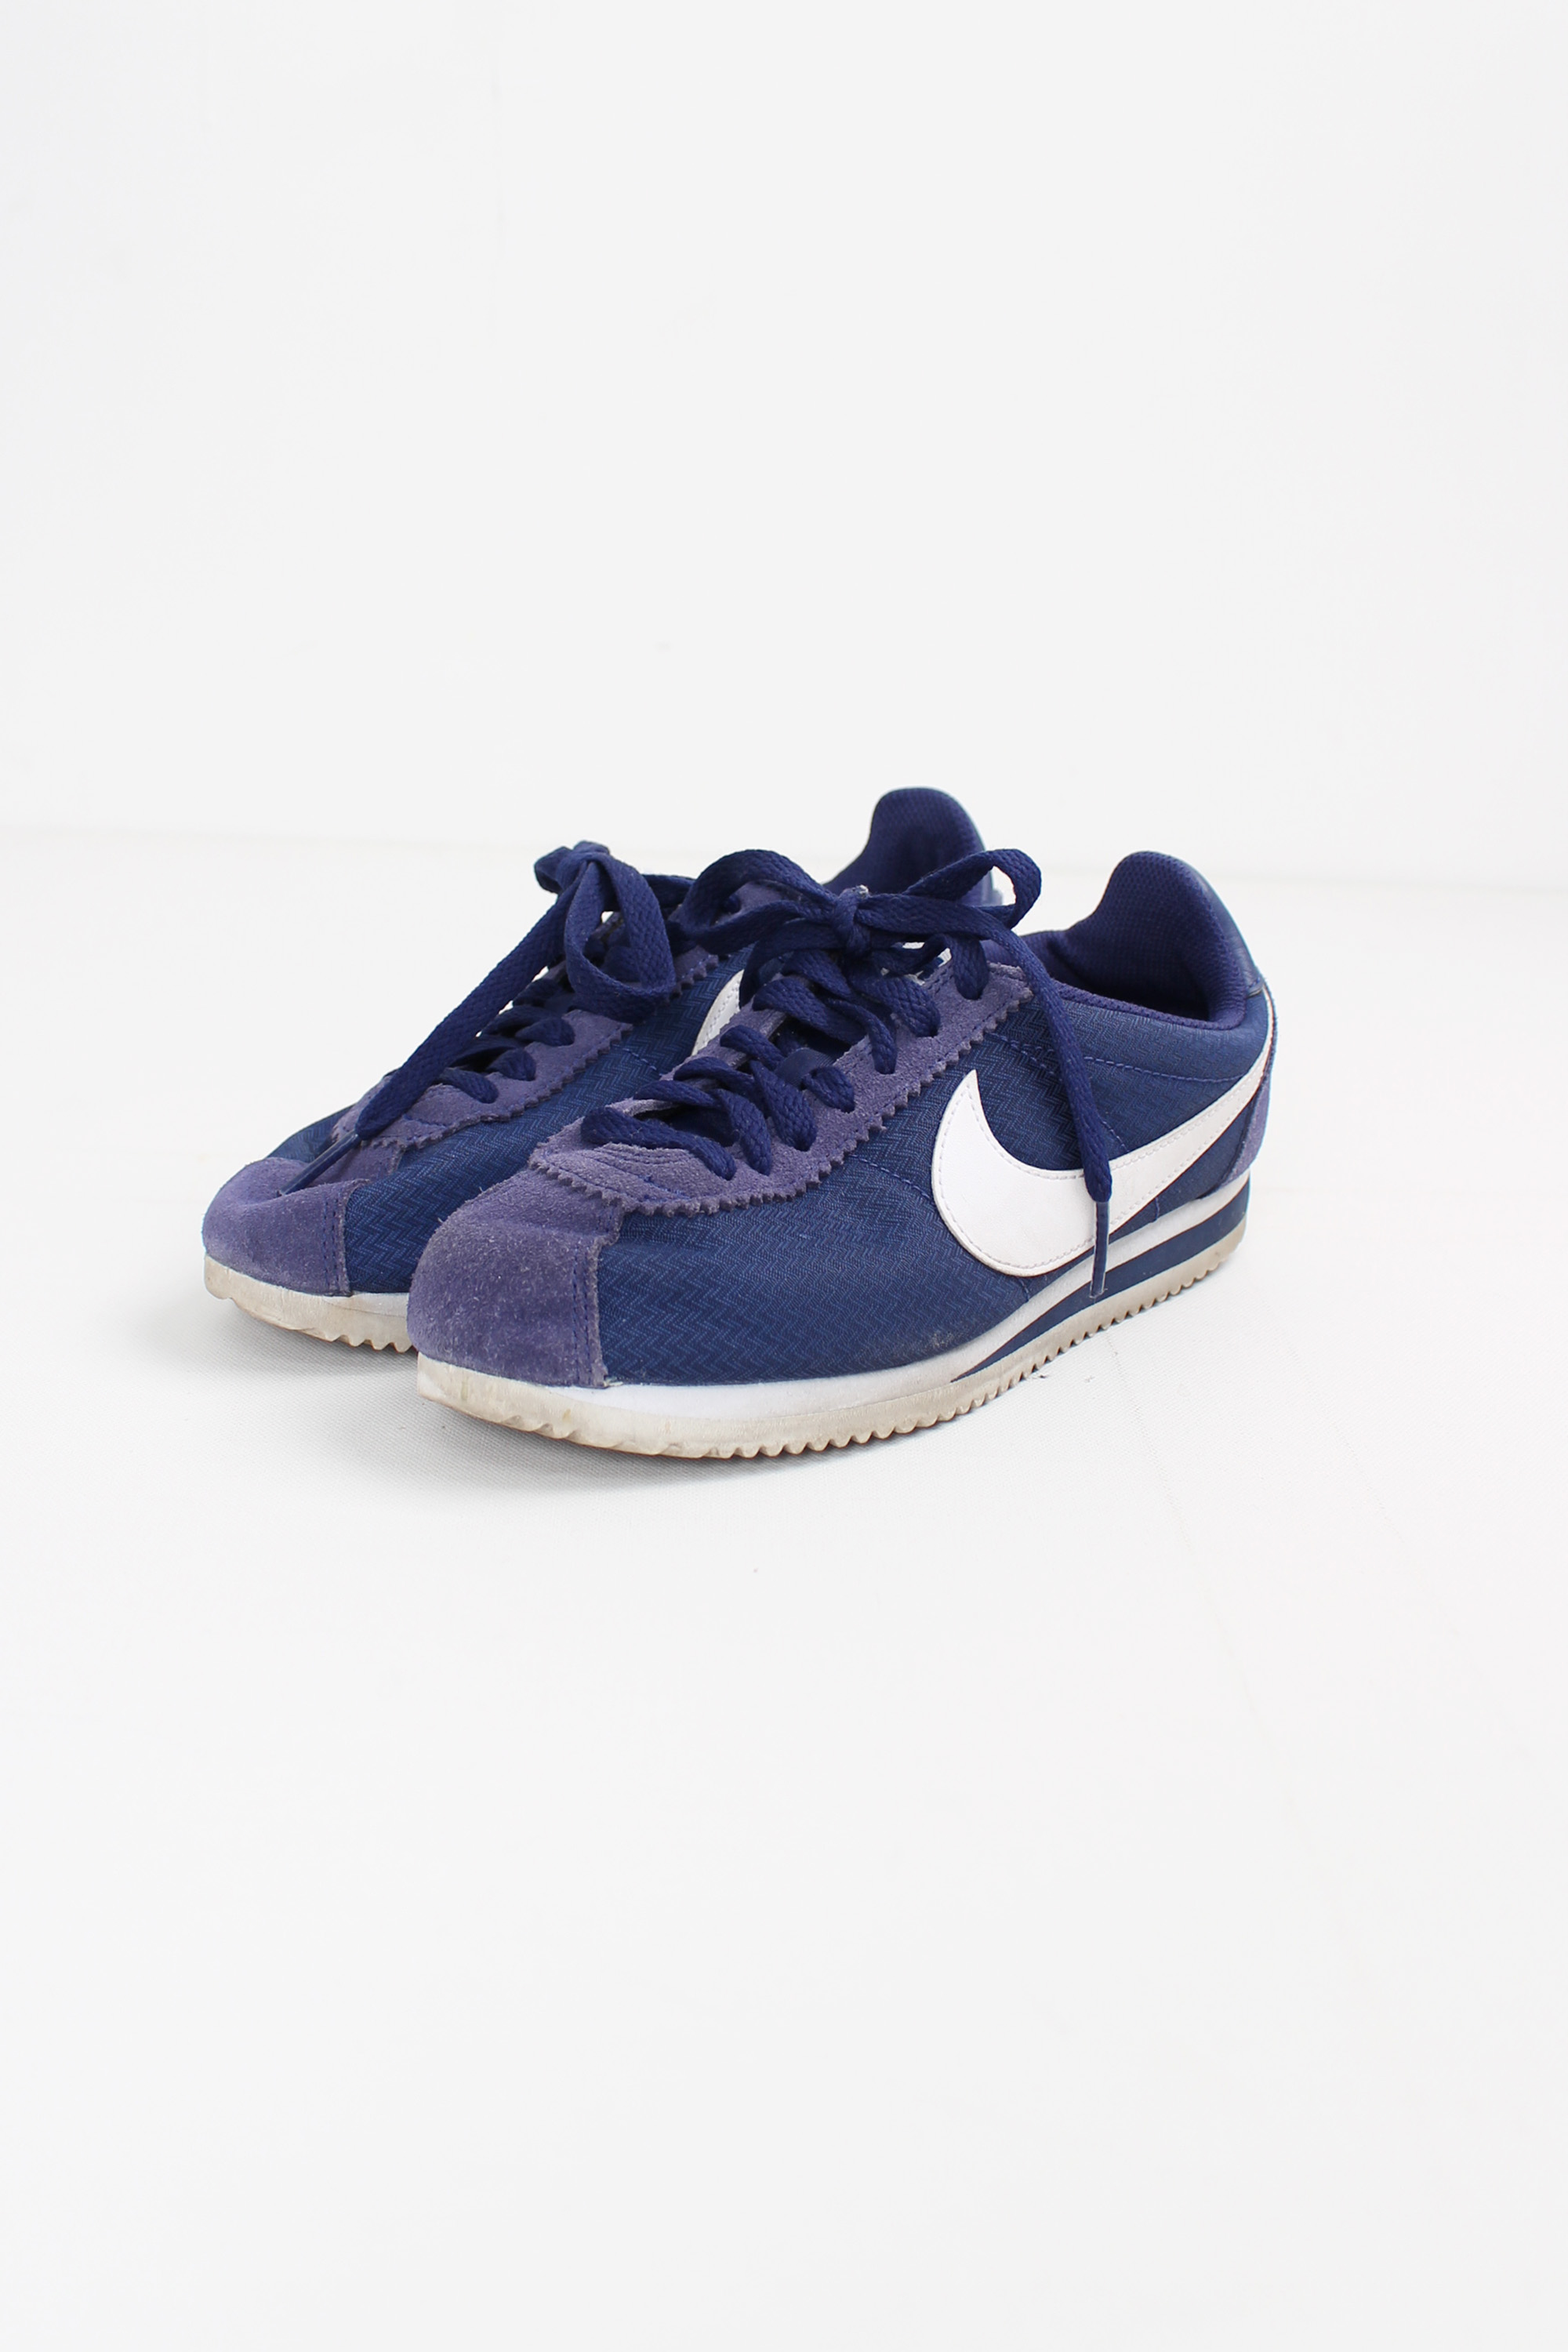 Nike classic cortez nylon &quot;royal blue&quot;